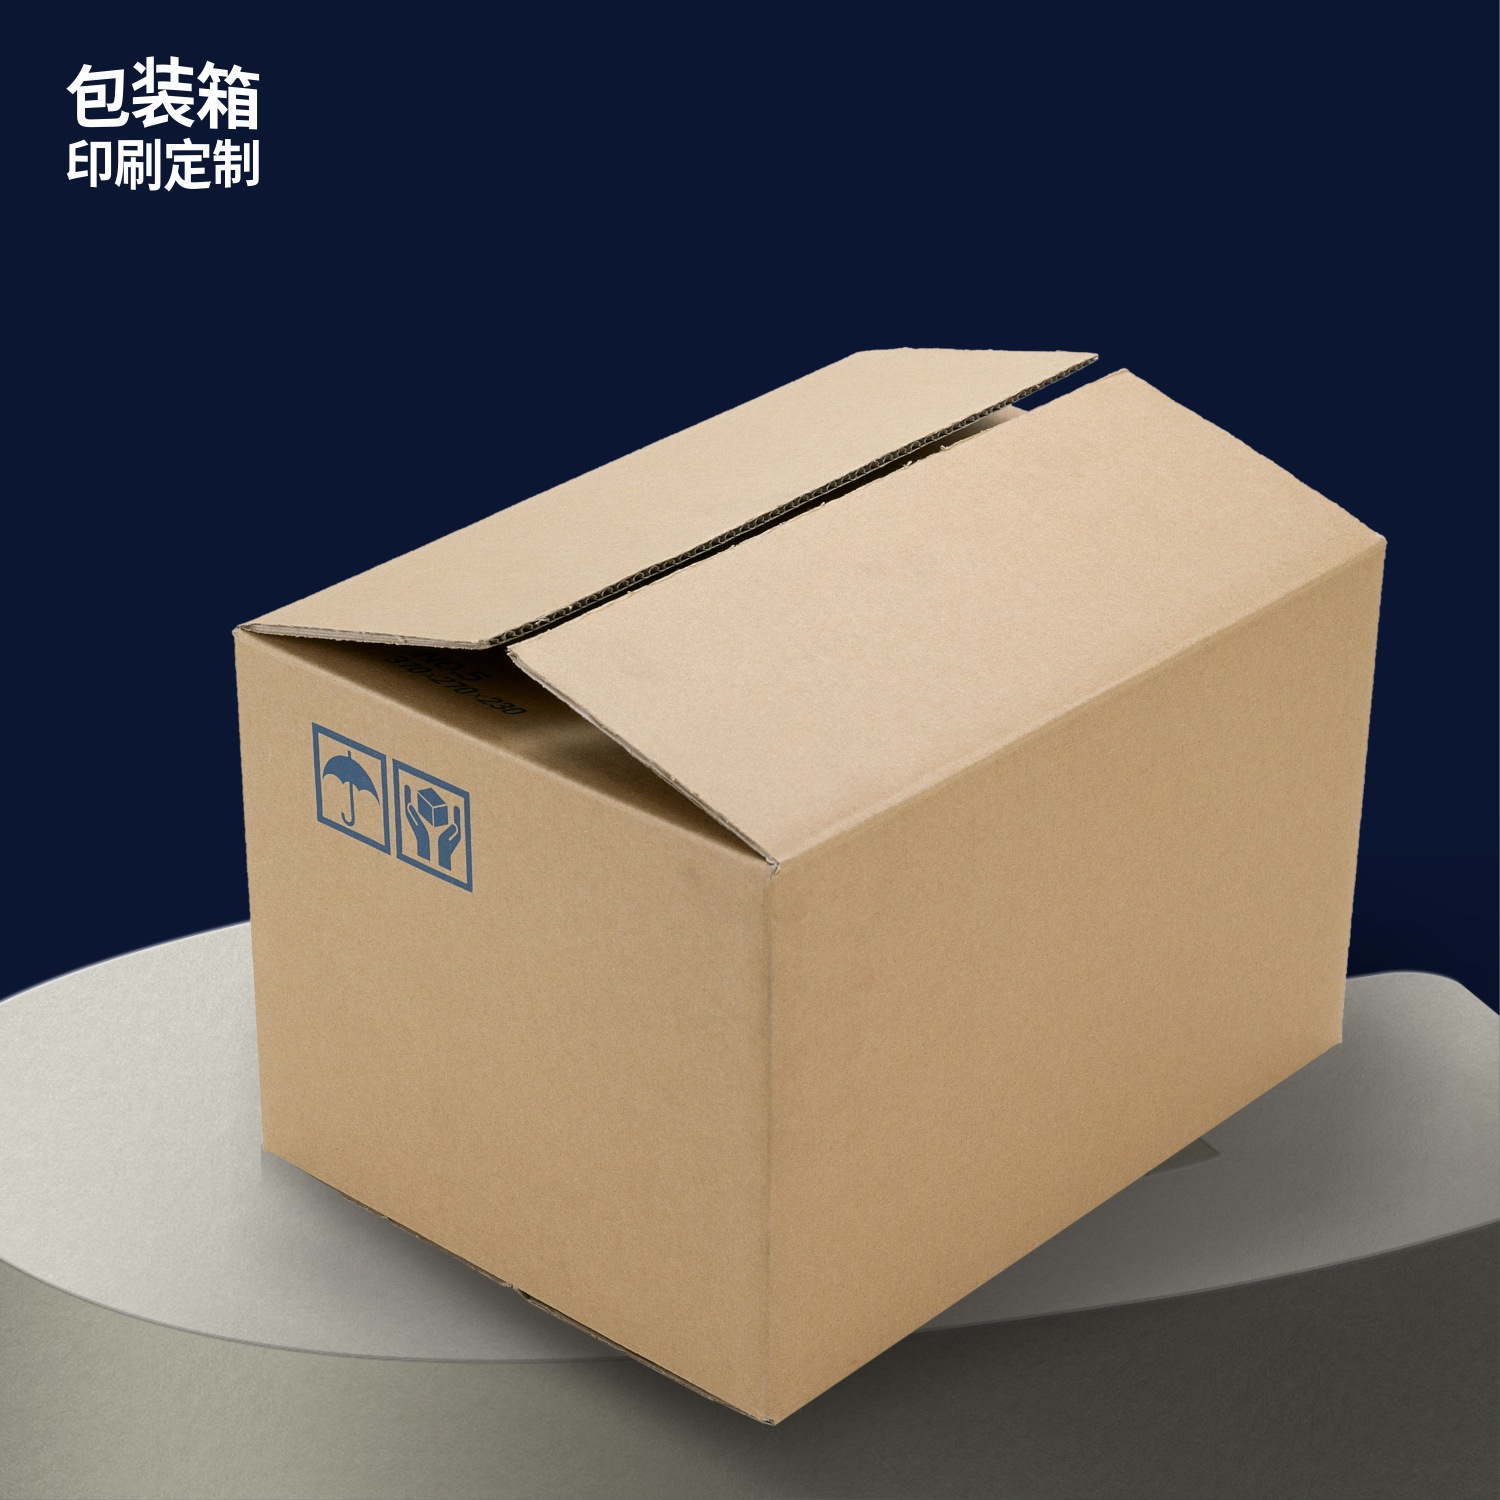 工厂价彩印纸箱定制尺寸 覆膜包装箱订做 设计制作各类牛皮纸箱子